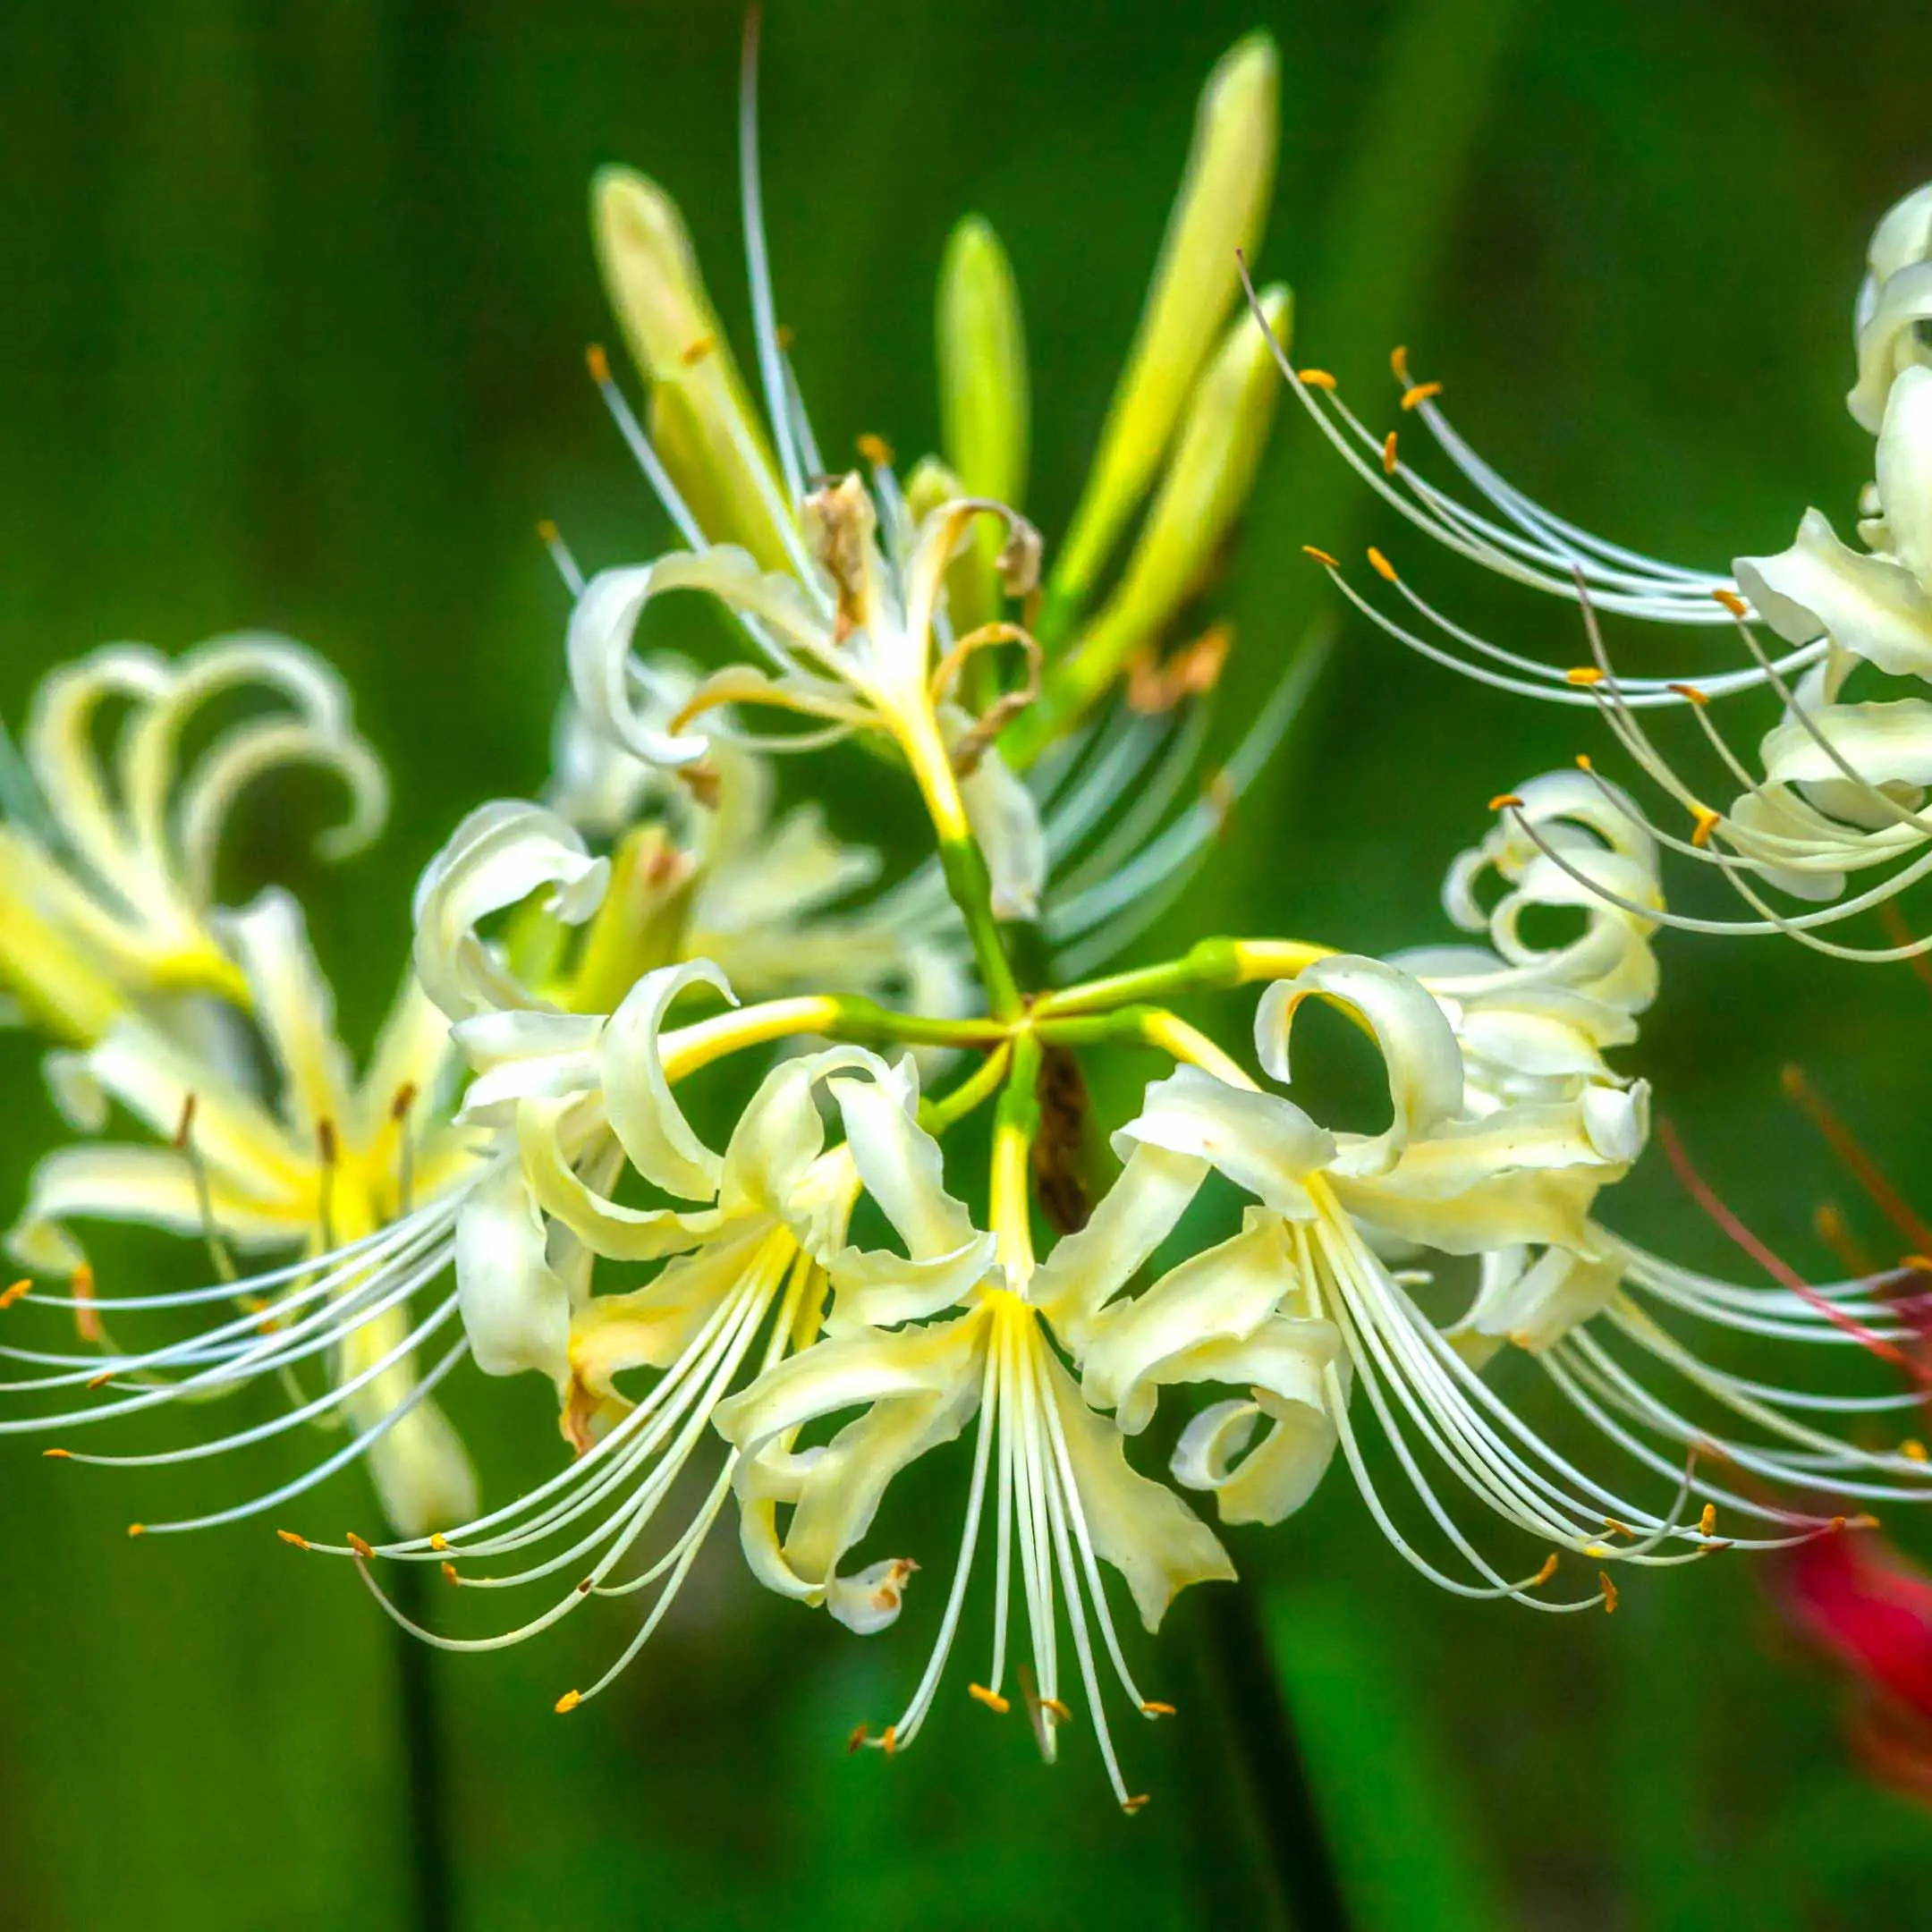 White spider lily flower